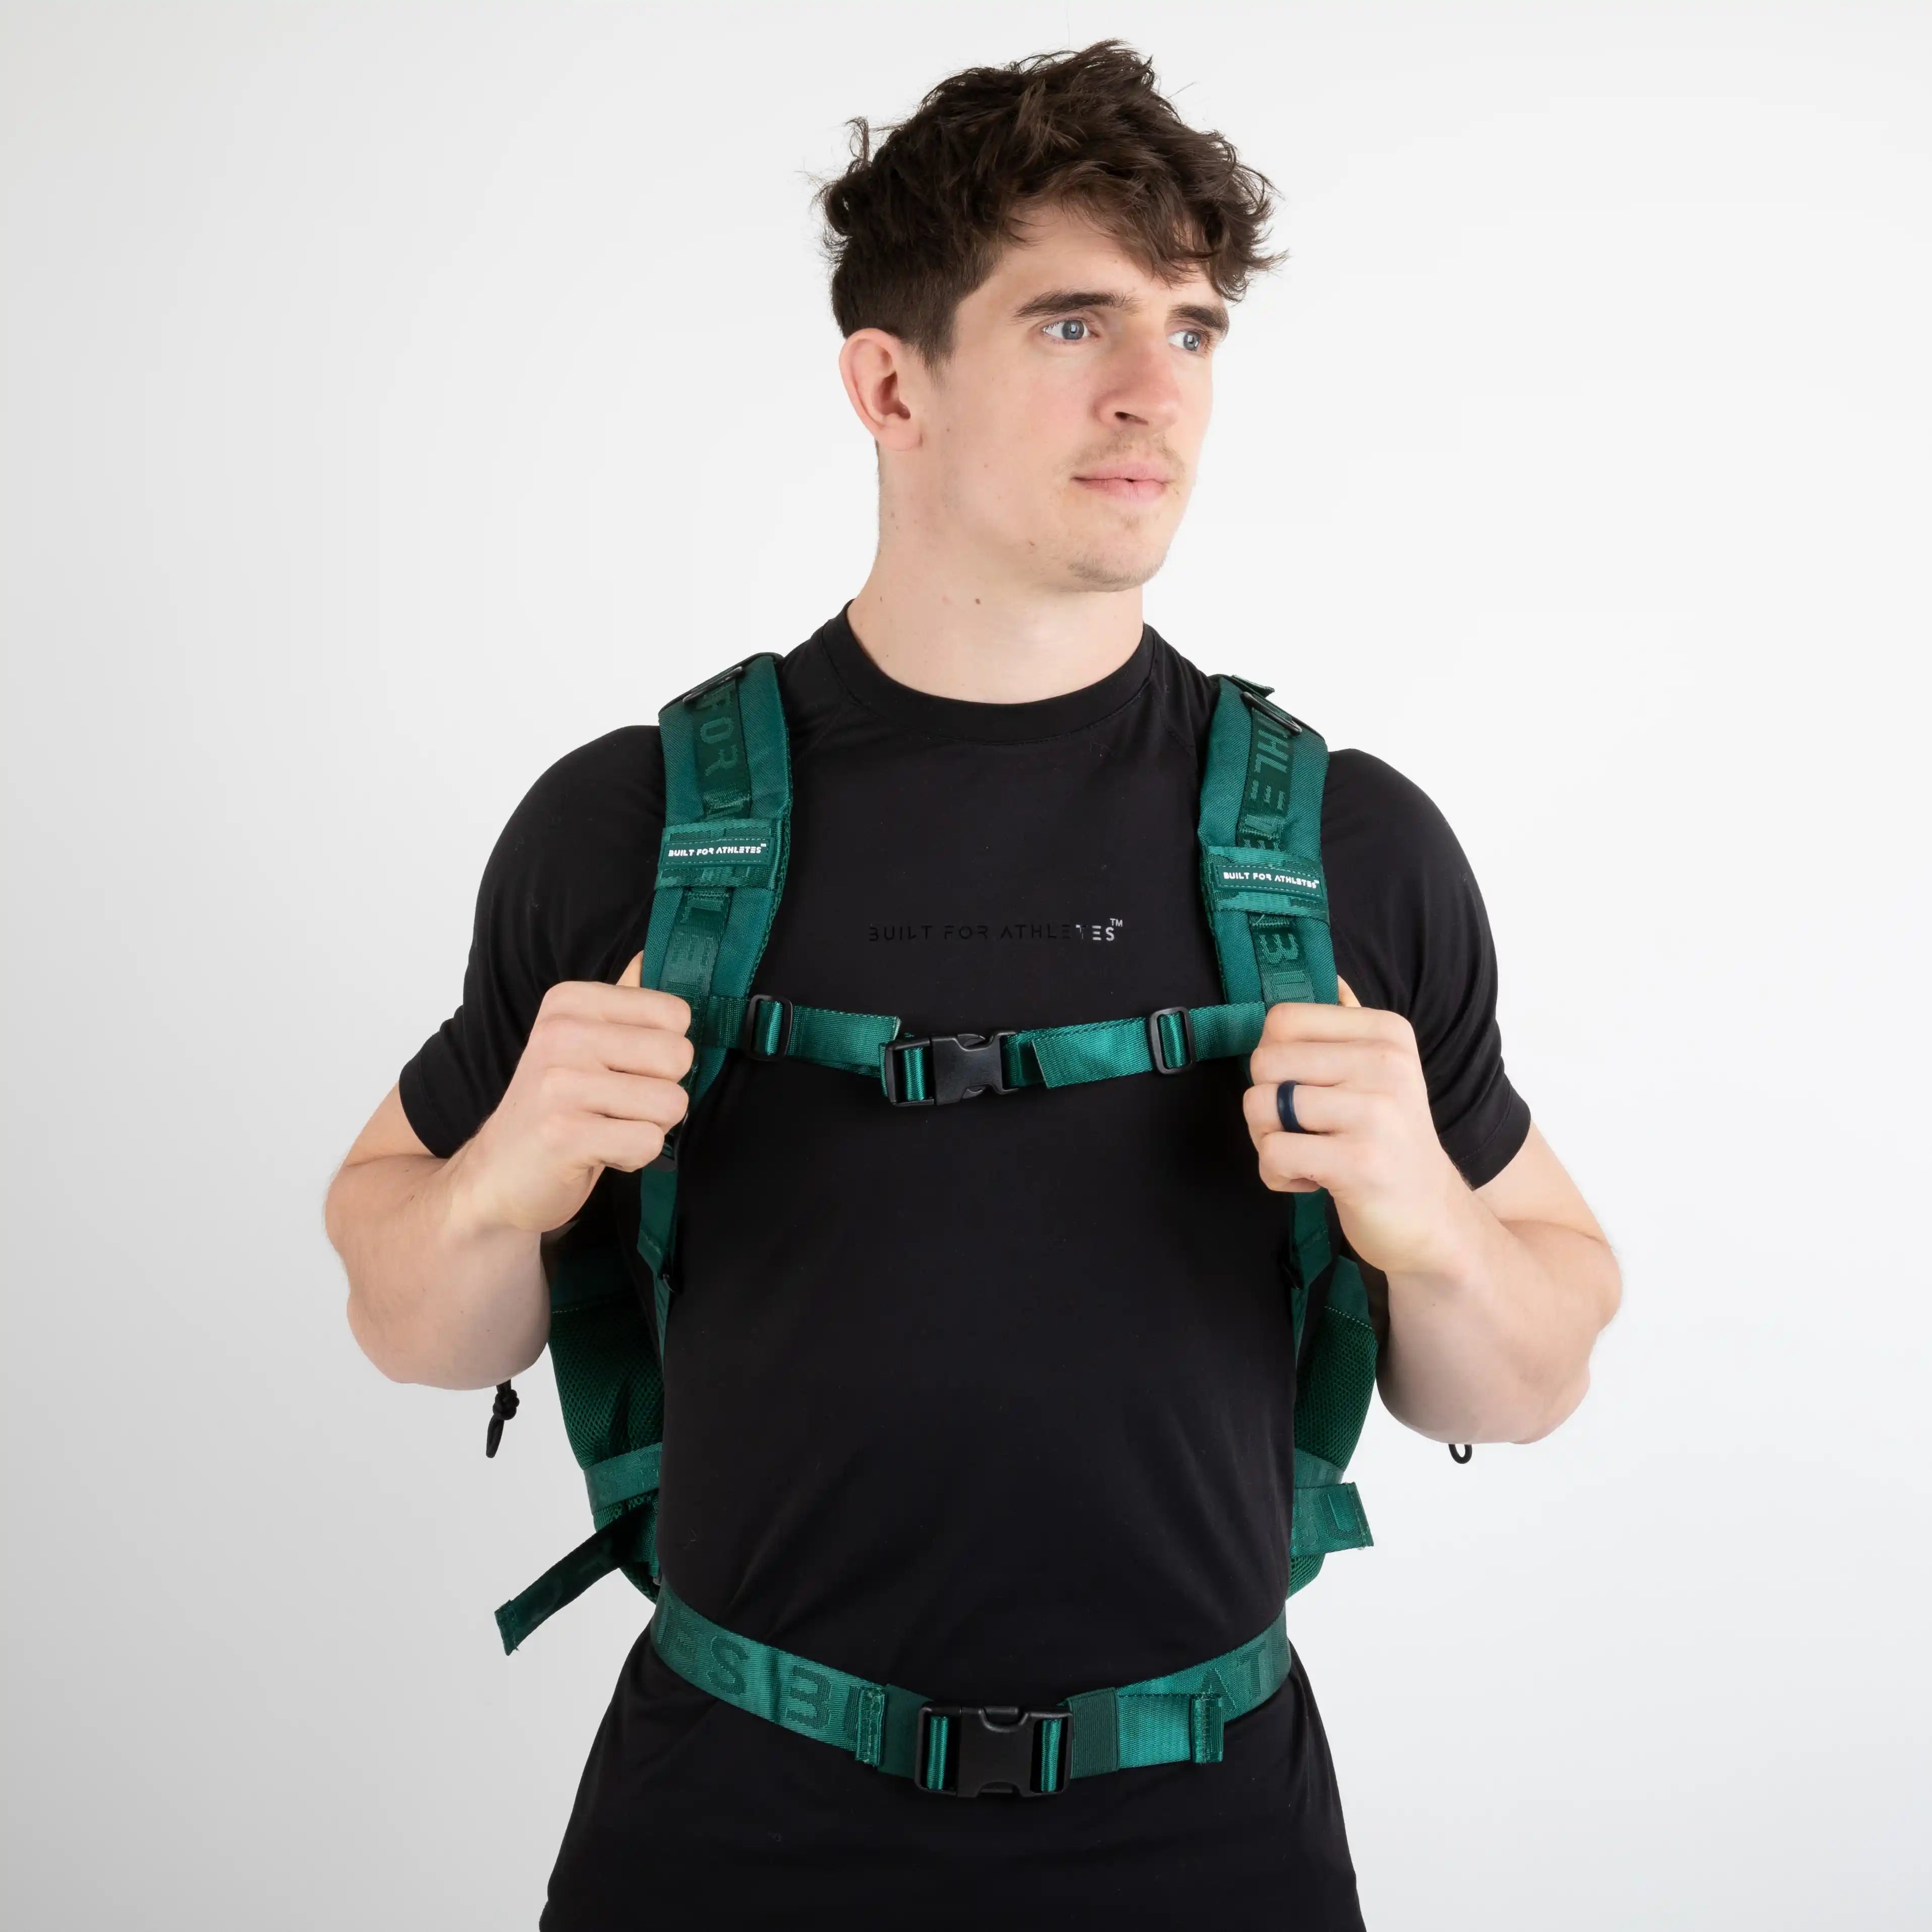 Built for Athletes Backpacks Large Forest Green Gym Backpack